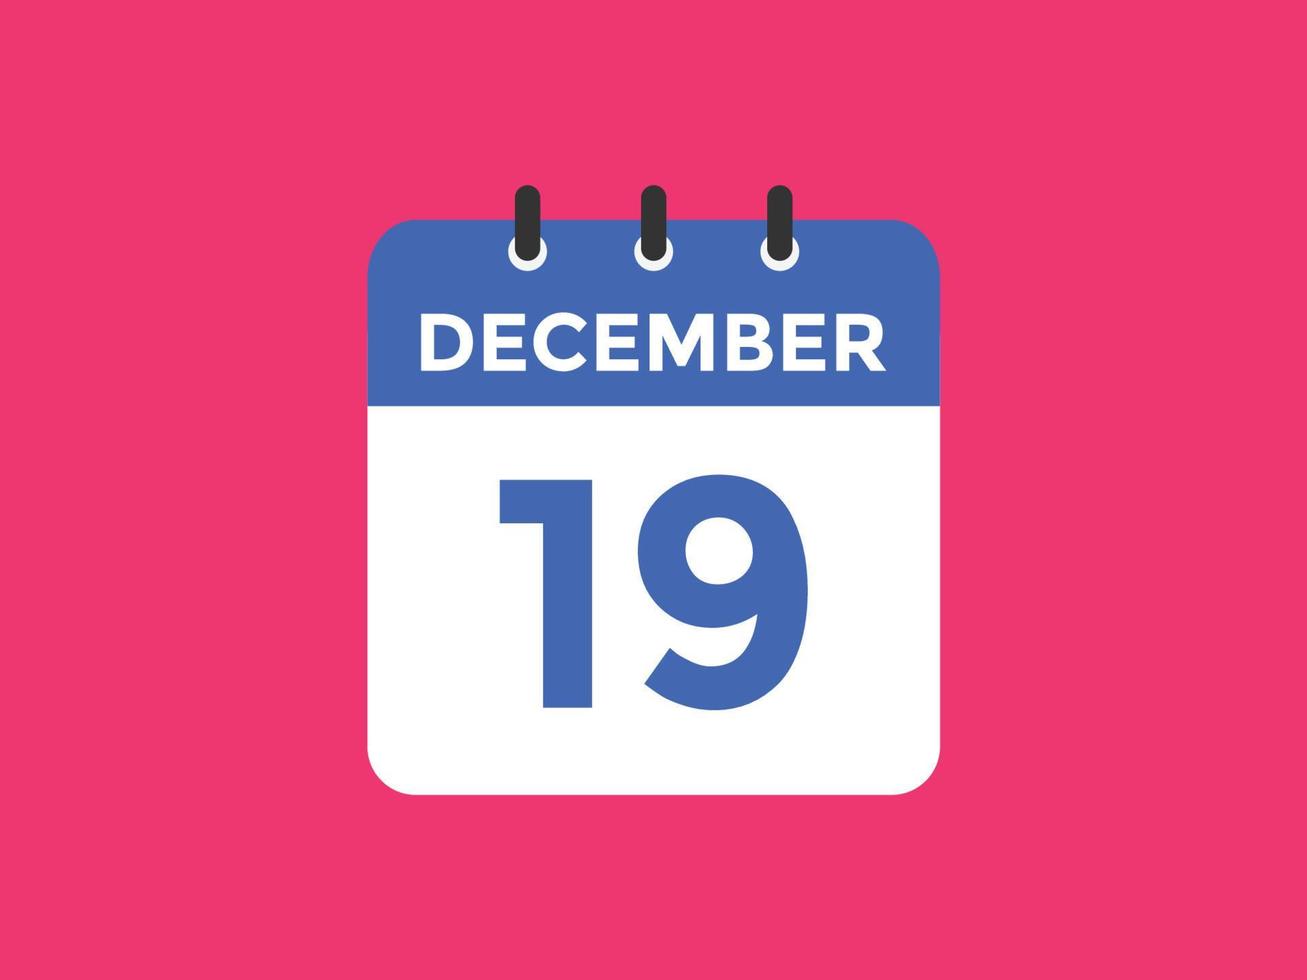 rappel du calendrier du 19 décembre. Modèle d'icône de calendrier quotidien du 19 décembre. modèle de conception d'icône calendrier 19 décembre. illustration vectorielle vecteur